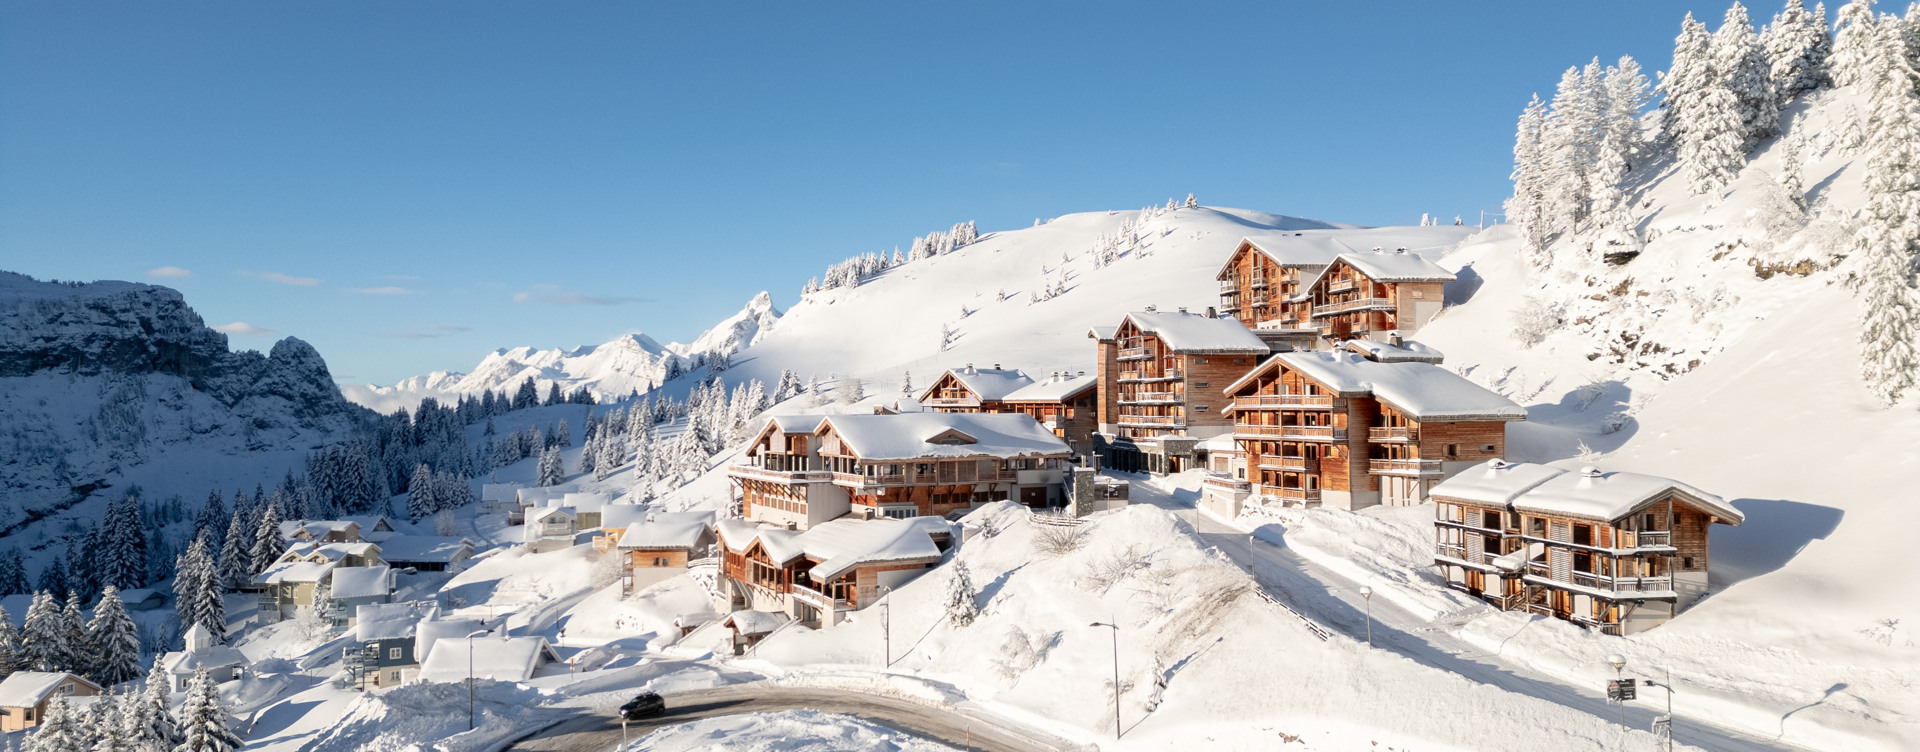 Beleef een heerlijke vakantie
in de Franse Alpen met korting